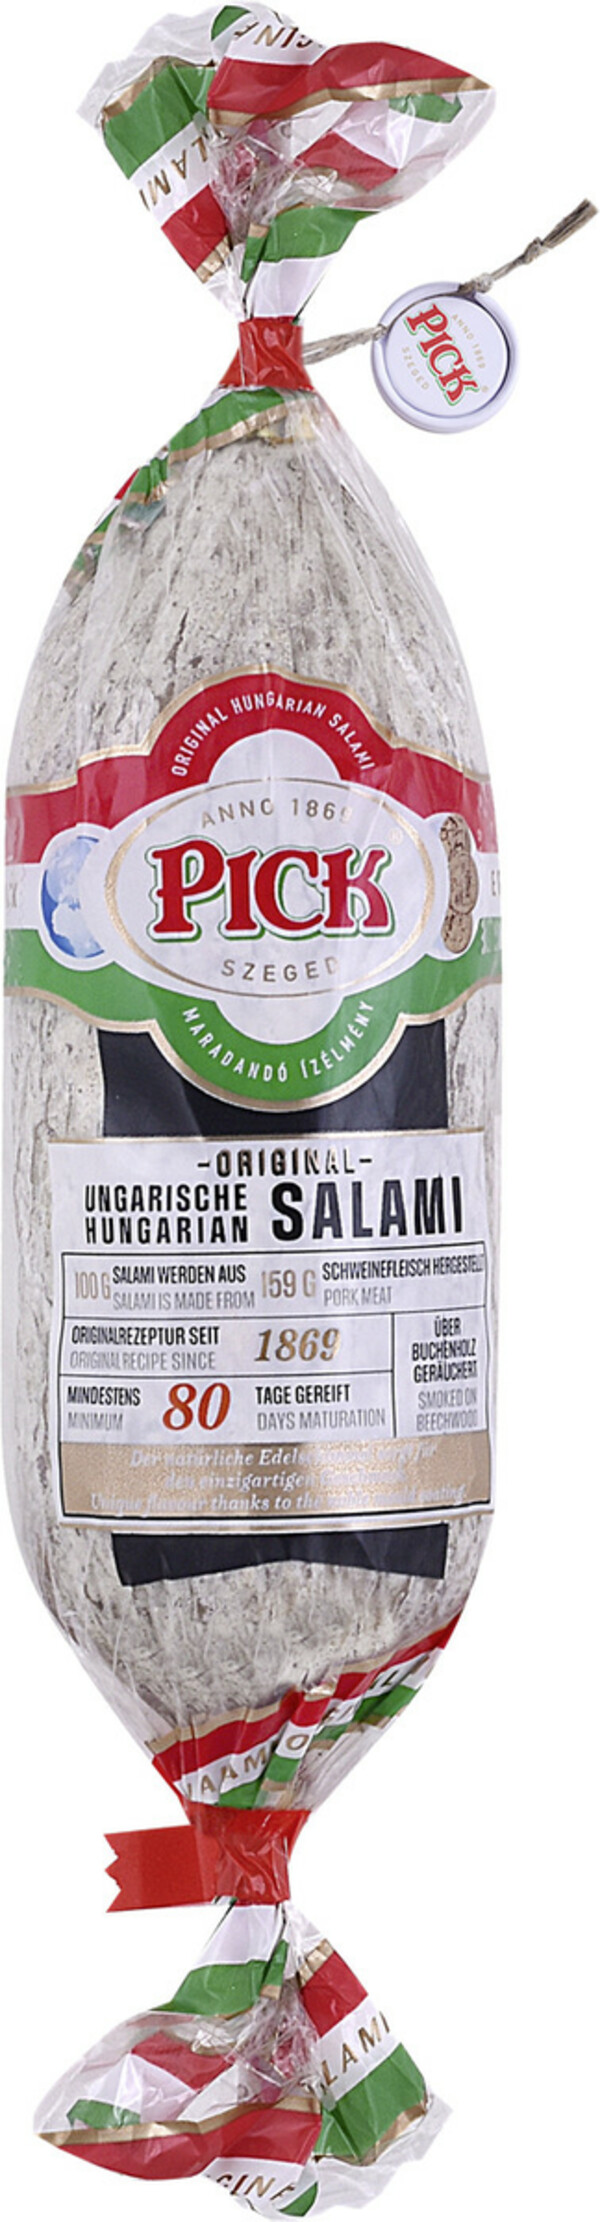 Bild 1 von Pick Original Ungarische Salami 250G